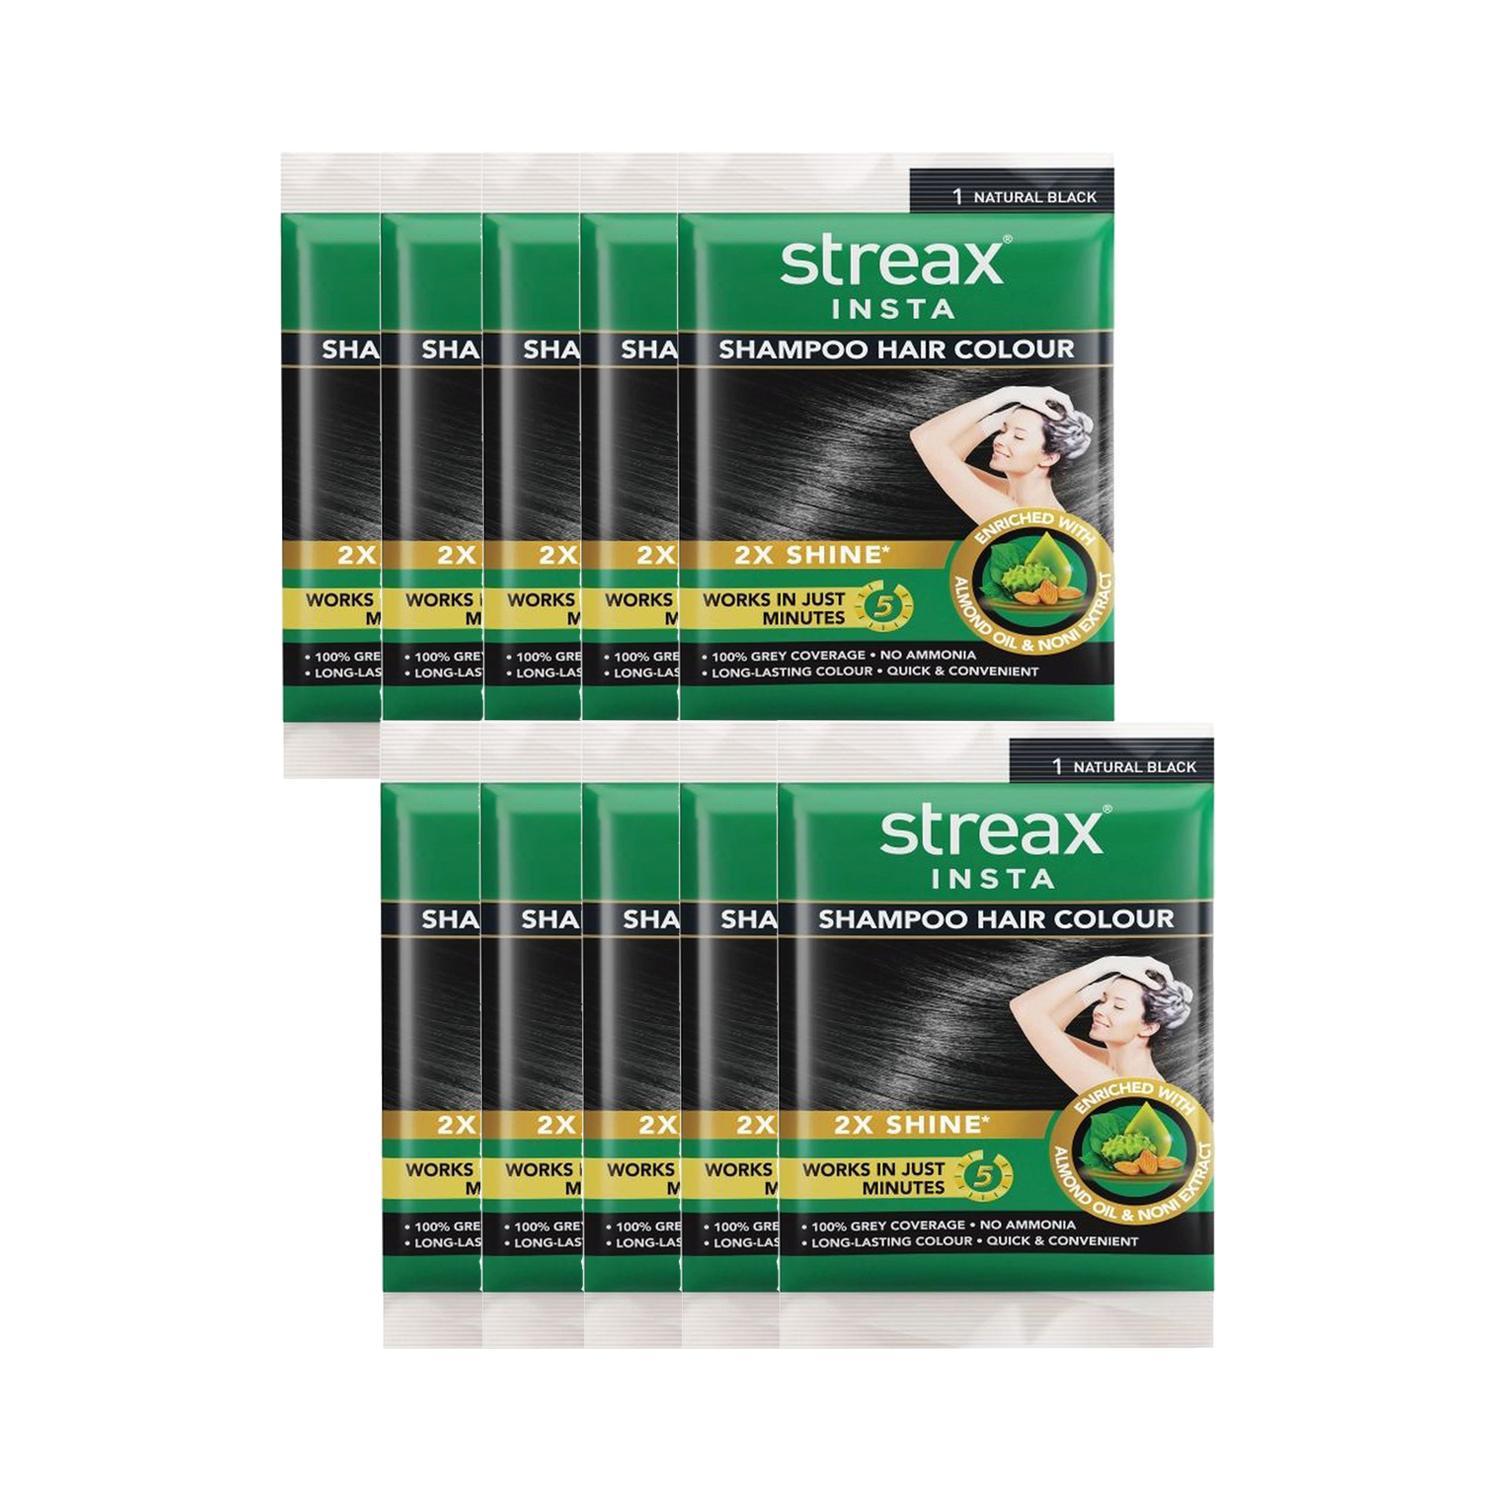 Streax | Streax Insta Shampoo Hair Colour - Natural Black (18ml) (Pack of 10) Combo